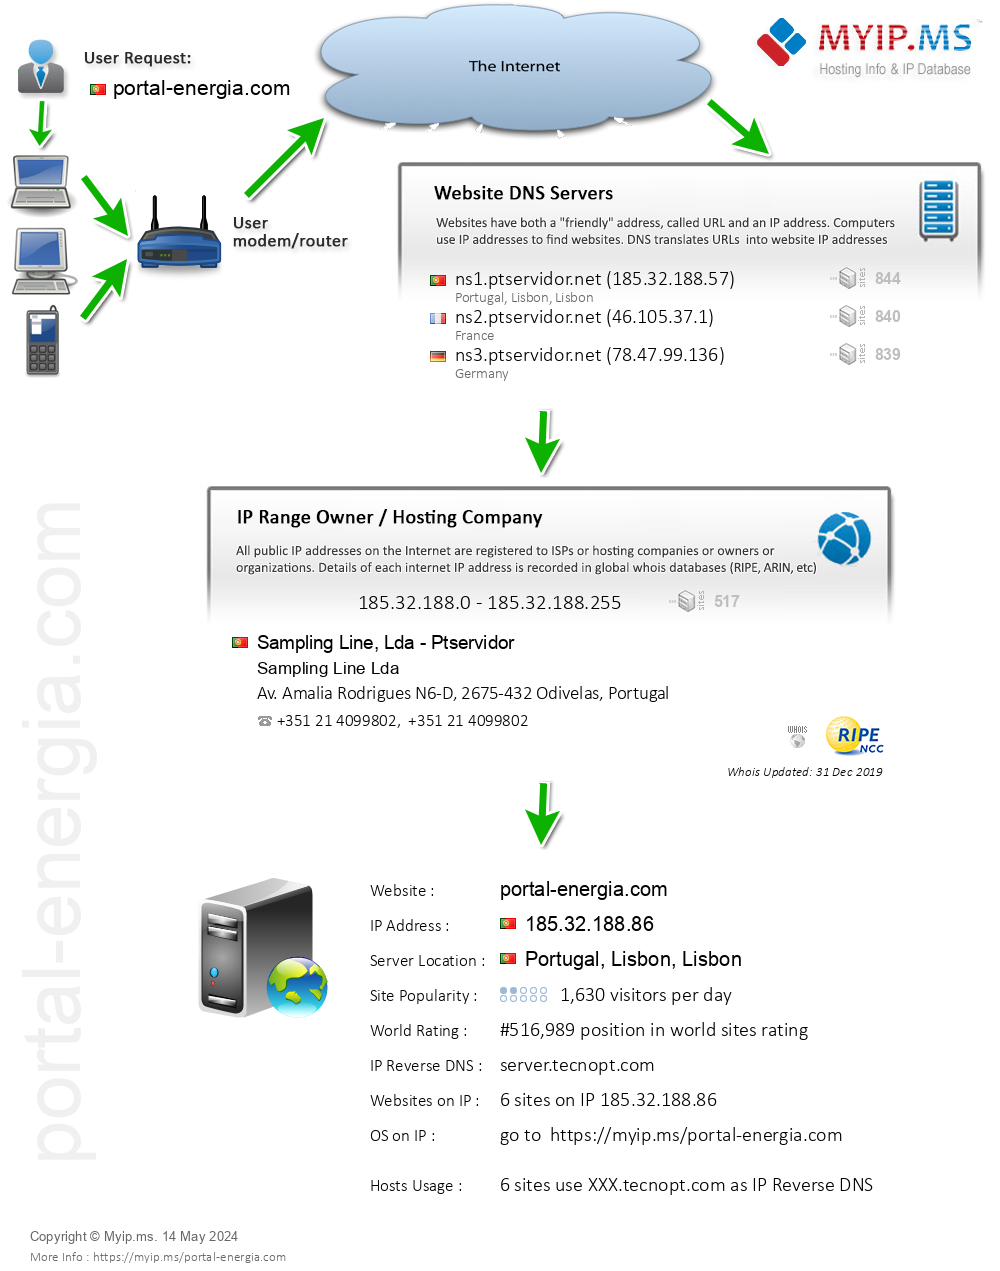 Portal-energia.com - Website Hosting Visual IP Diagram